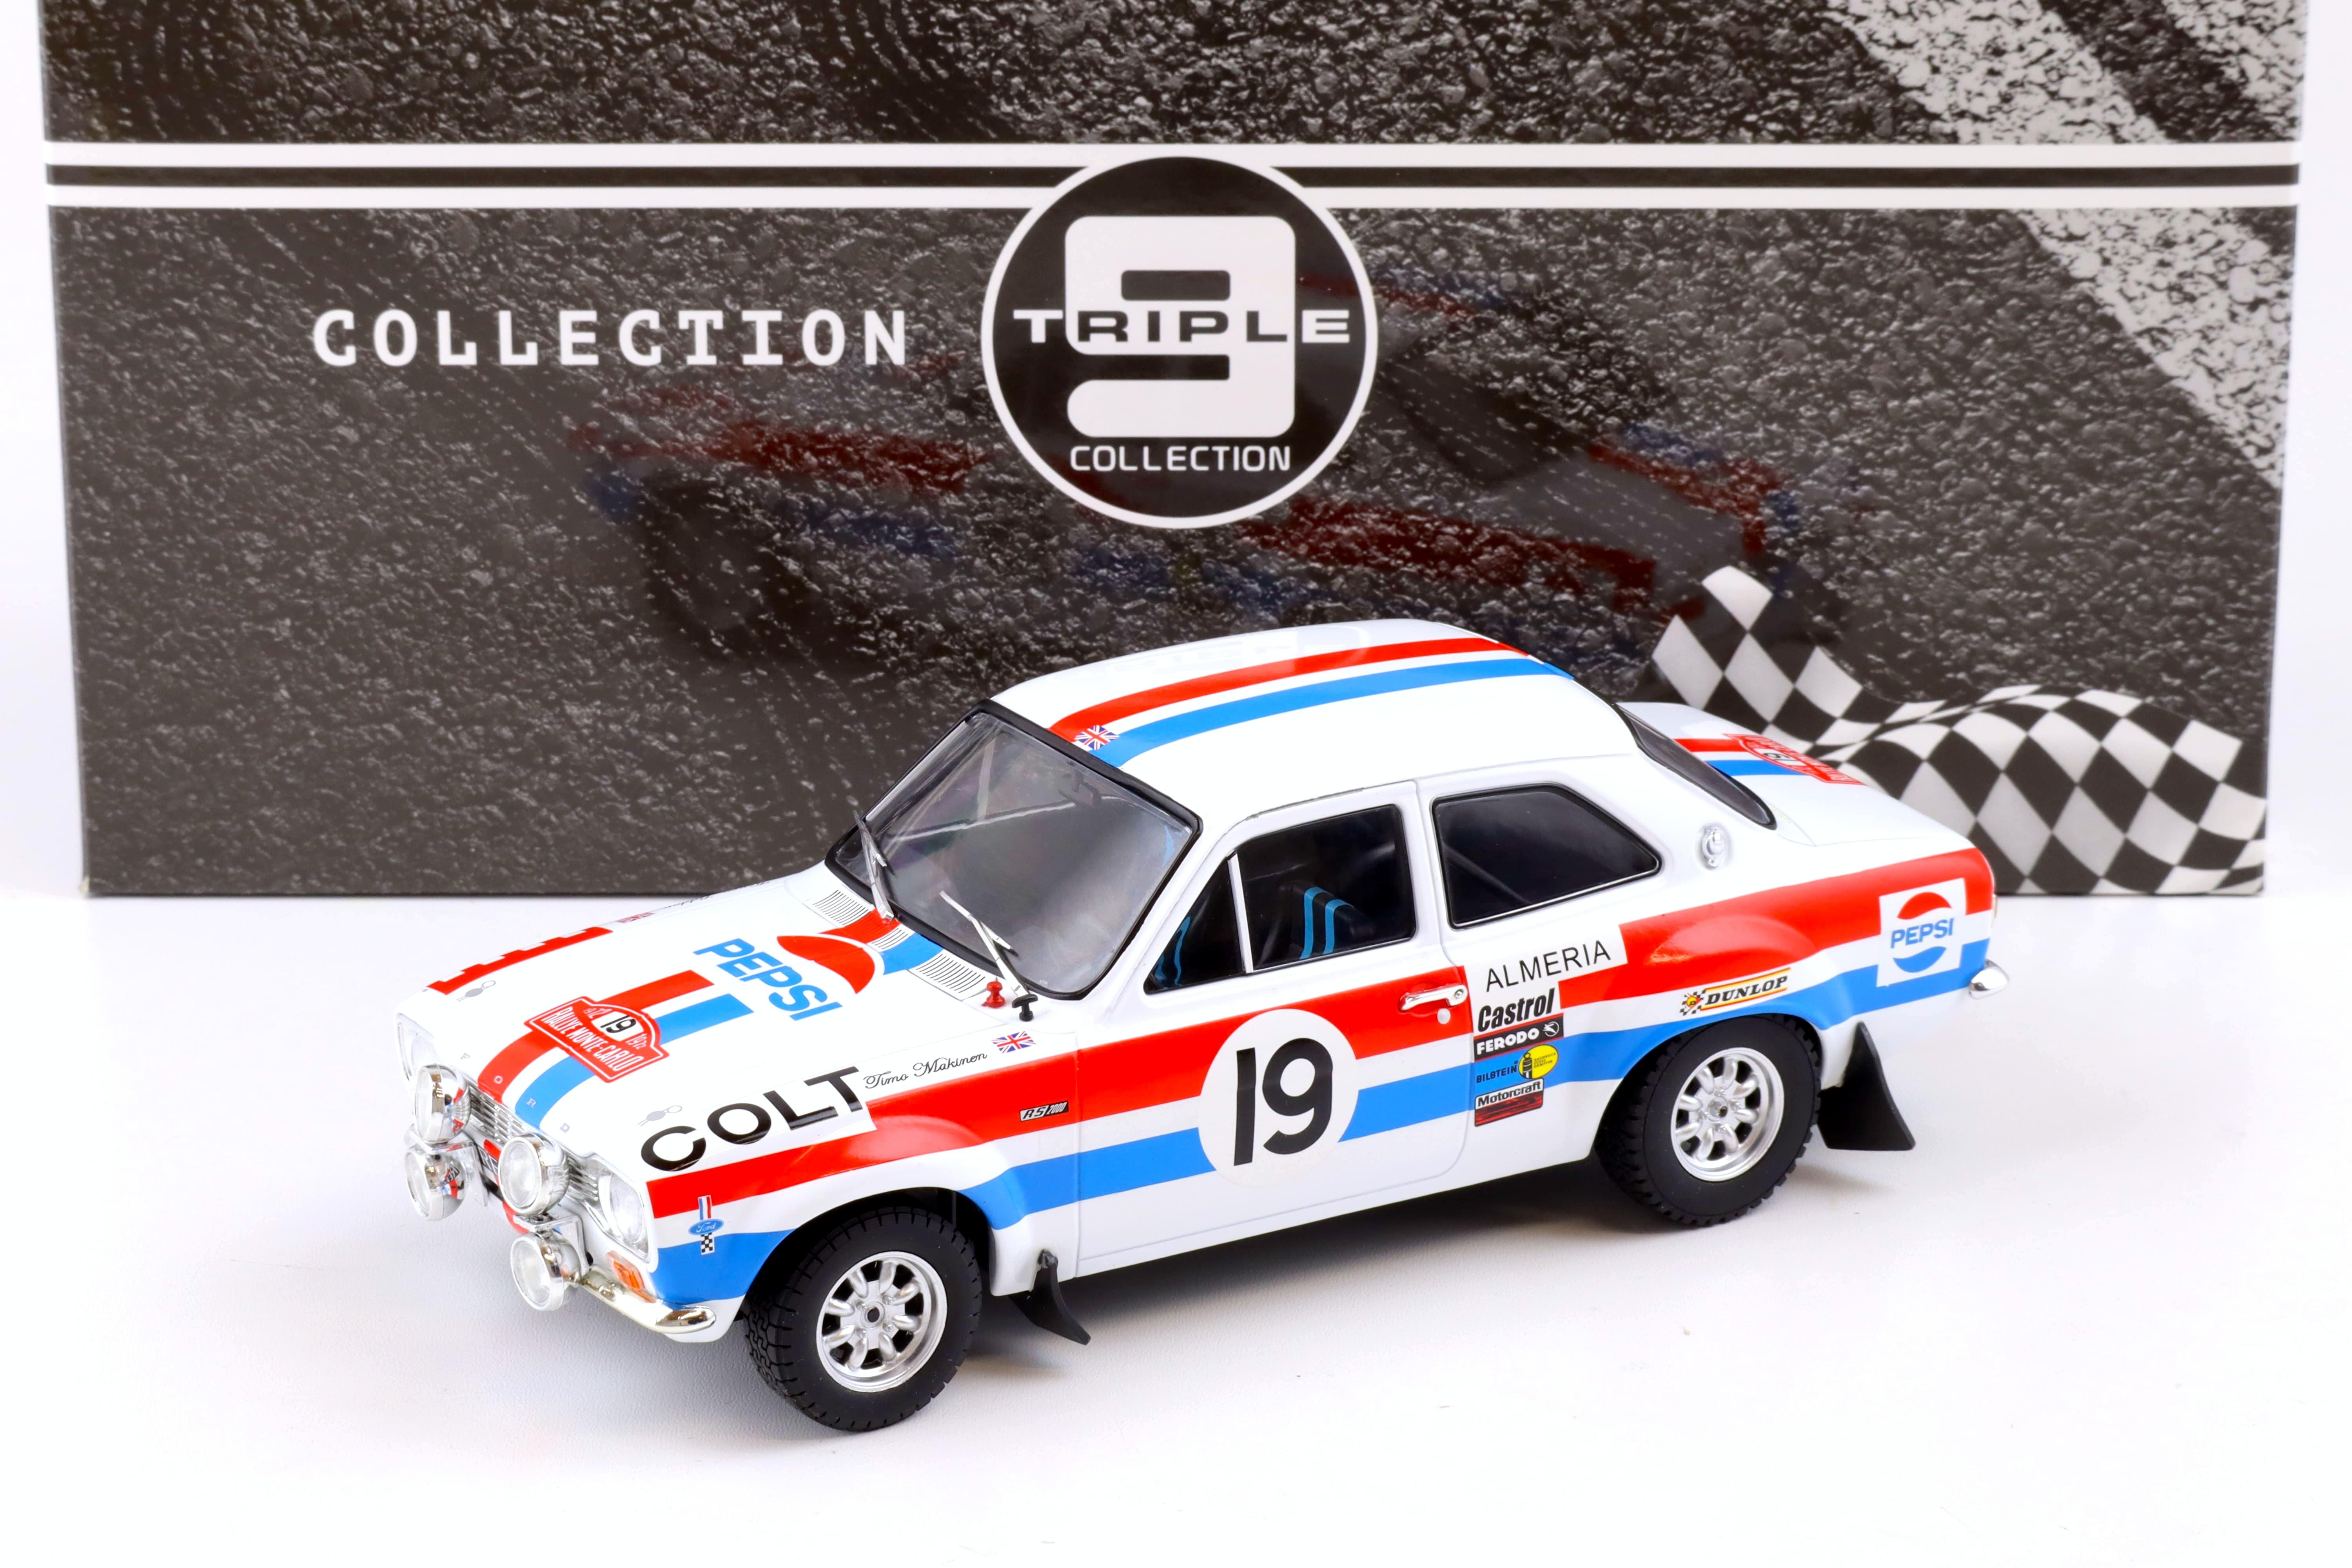 1:18 Triple9 Collection Ford Escort MK1 Rally Monte Carlo 1972 Pepsi #19 Makinen 